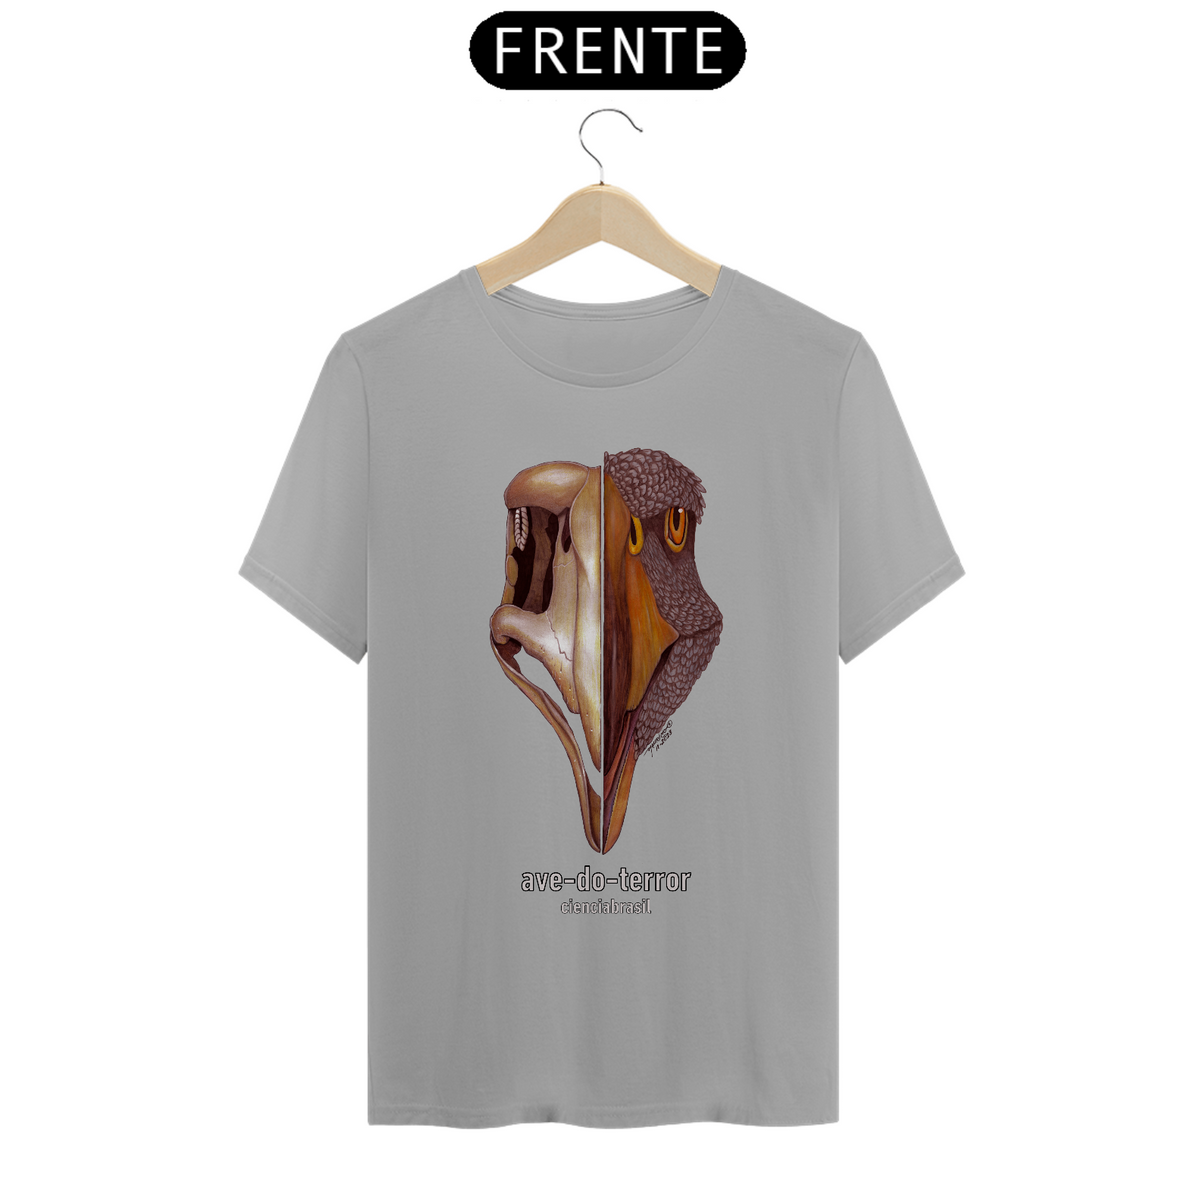 Nome do produto: T-Shirt Classic ave-do-terror